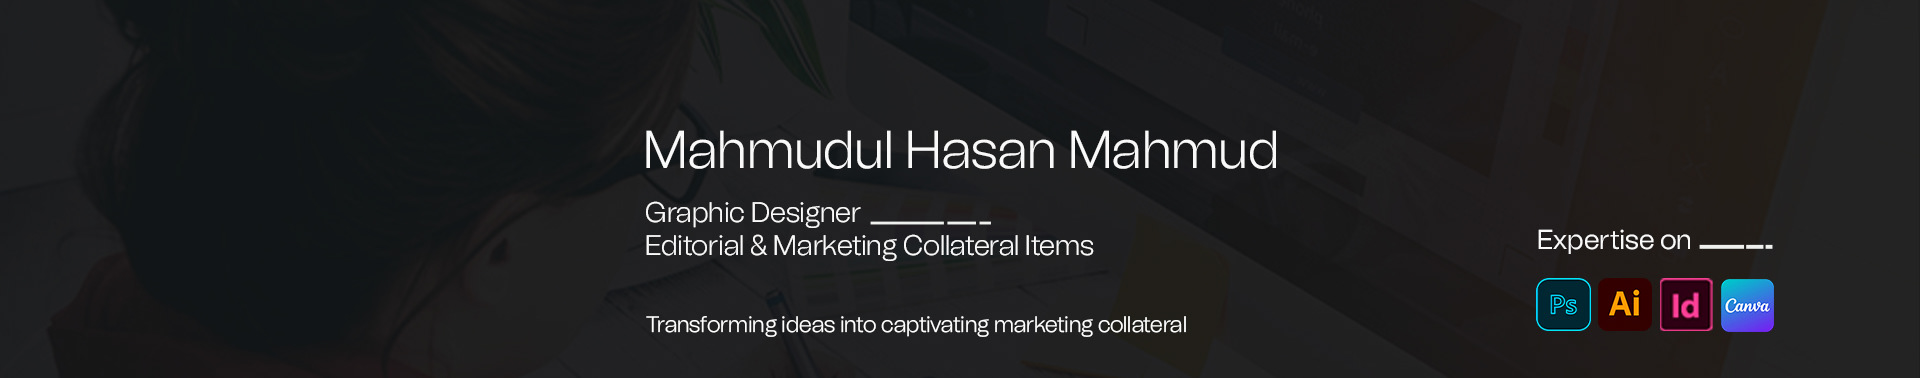 Mahmudul Hasan Mahmud's profile banner